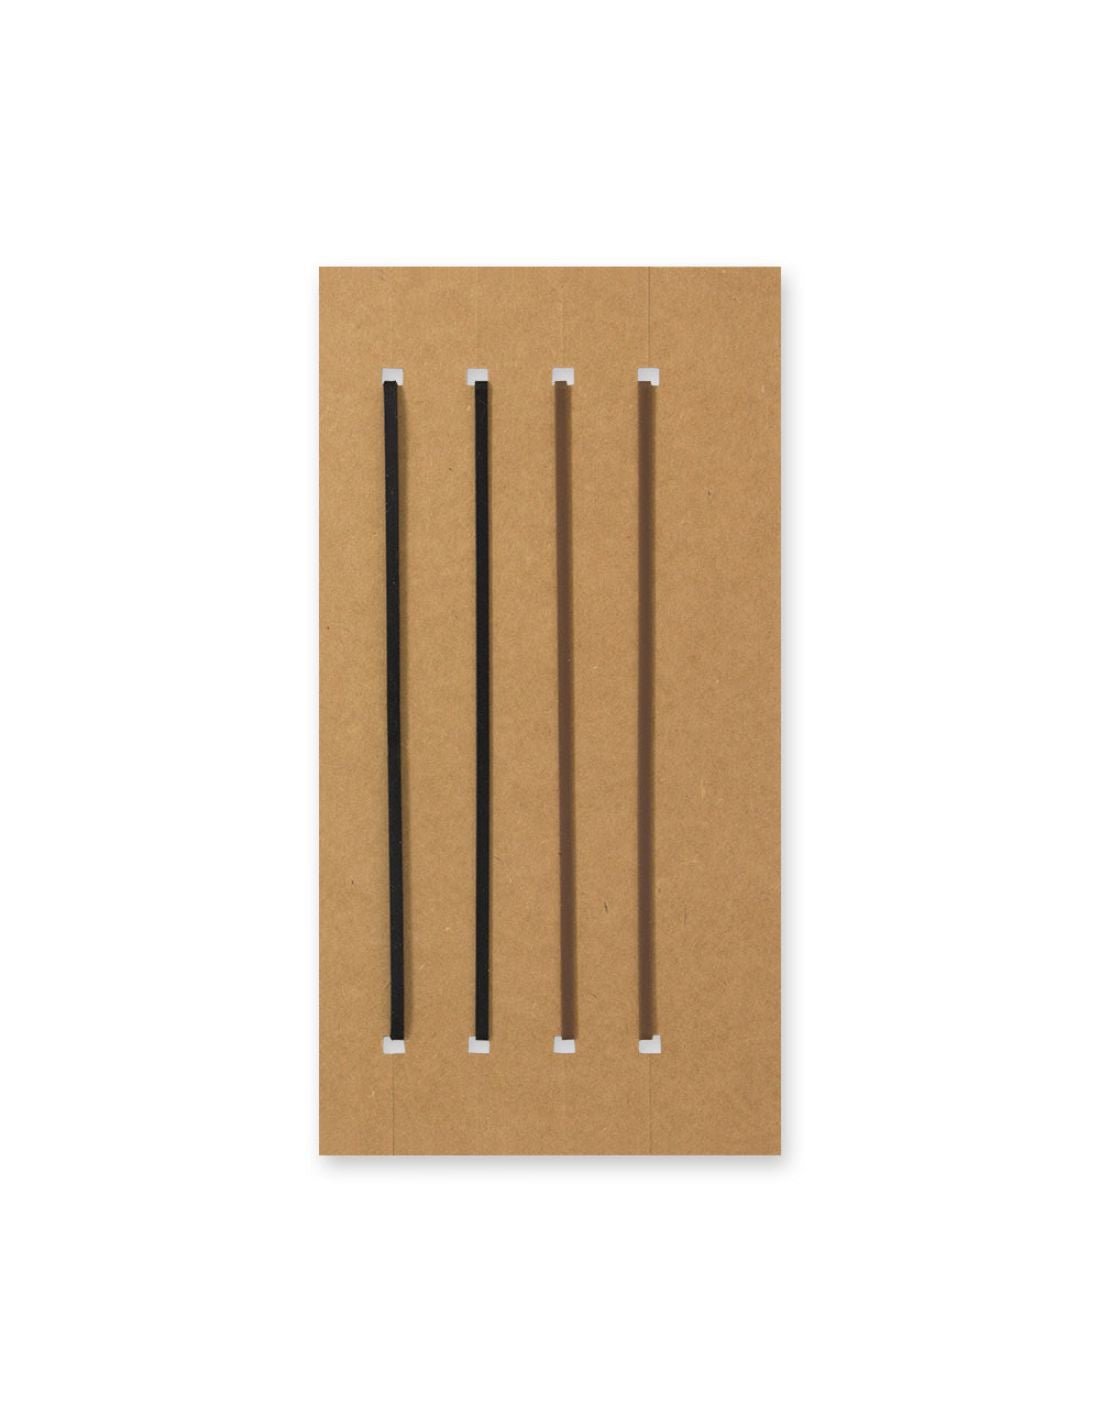 TRAVELER'S notebook 021 - bandes élastiques (regular size) - TN Regular size - - 4902805143332